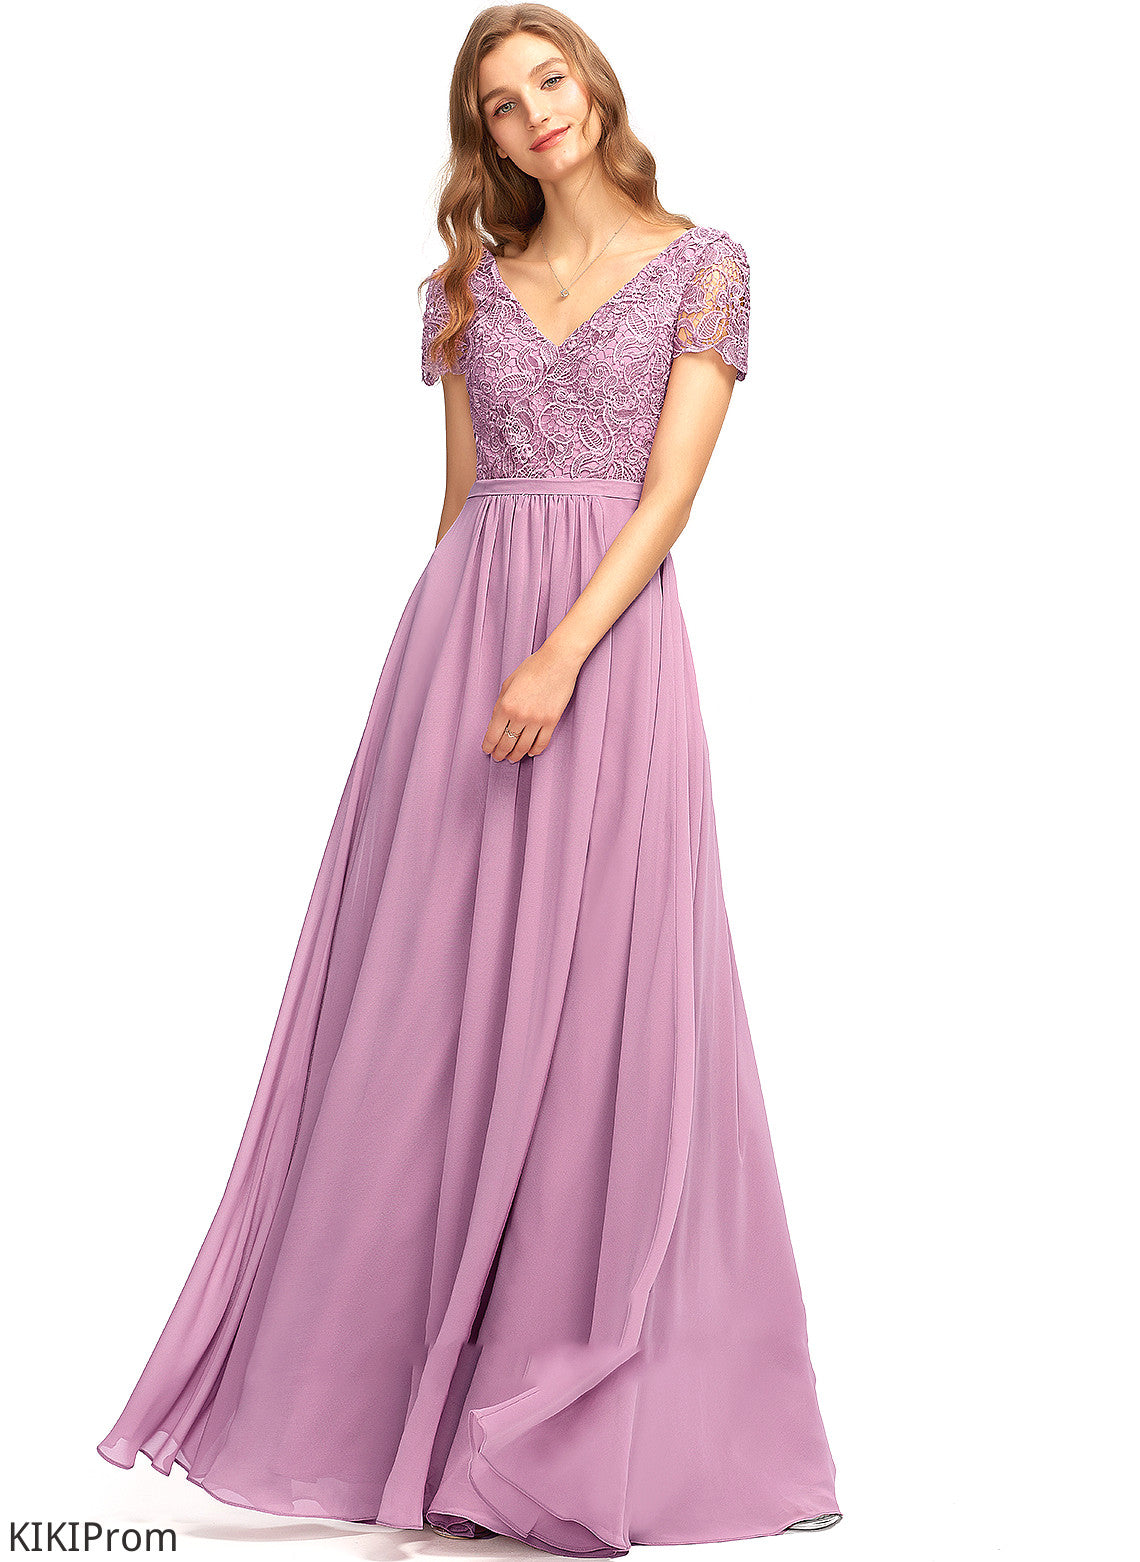 Silhouette A-Line Length V-neck Neckline SplitFront Fabric Embellishment Floor-Length Melanie Bridesmaid Dresses